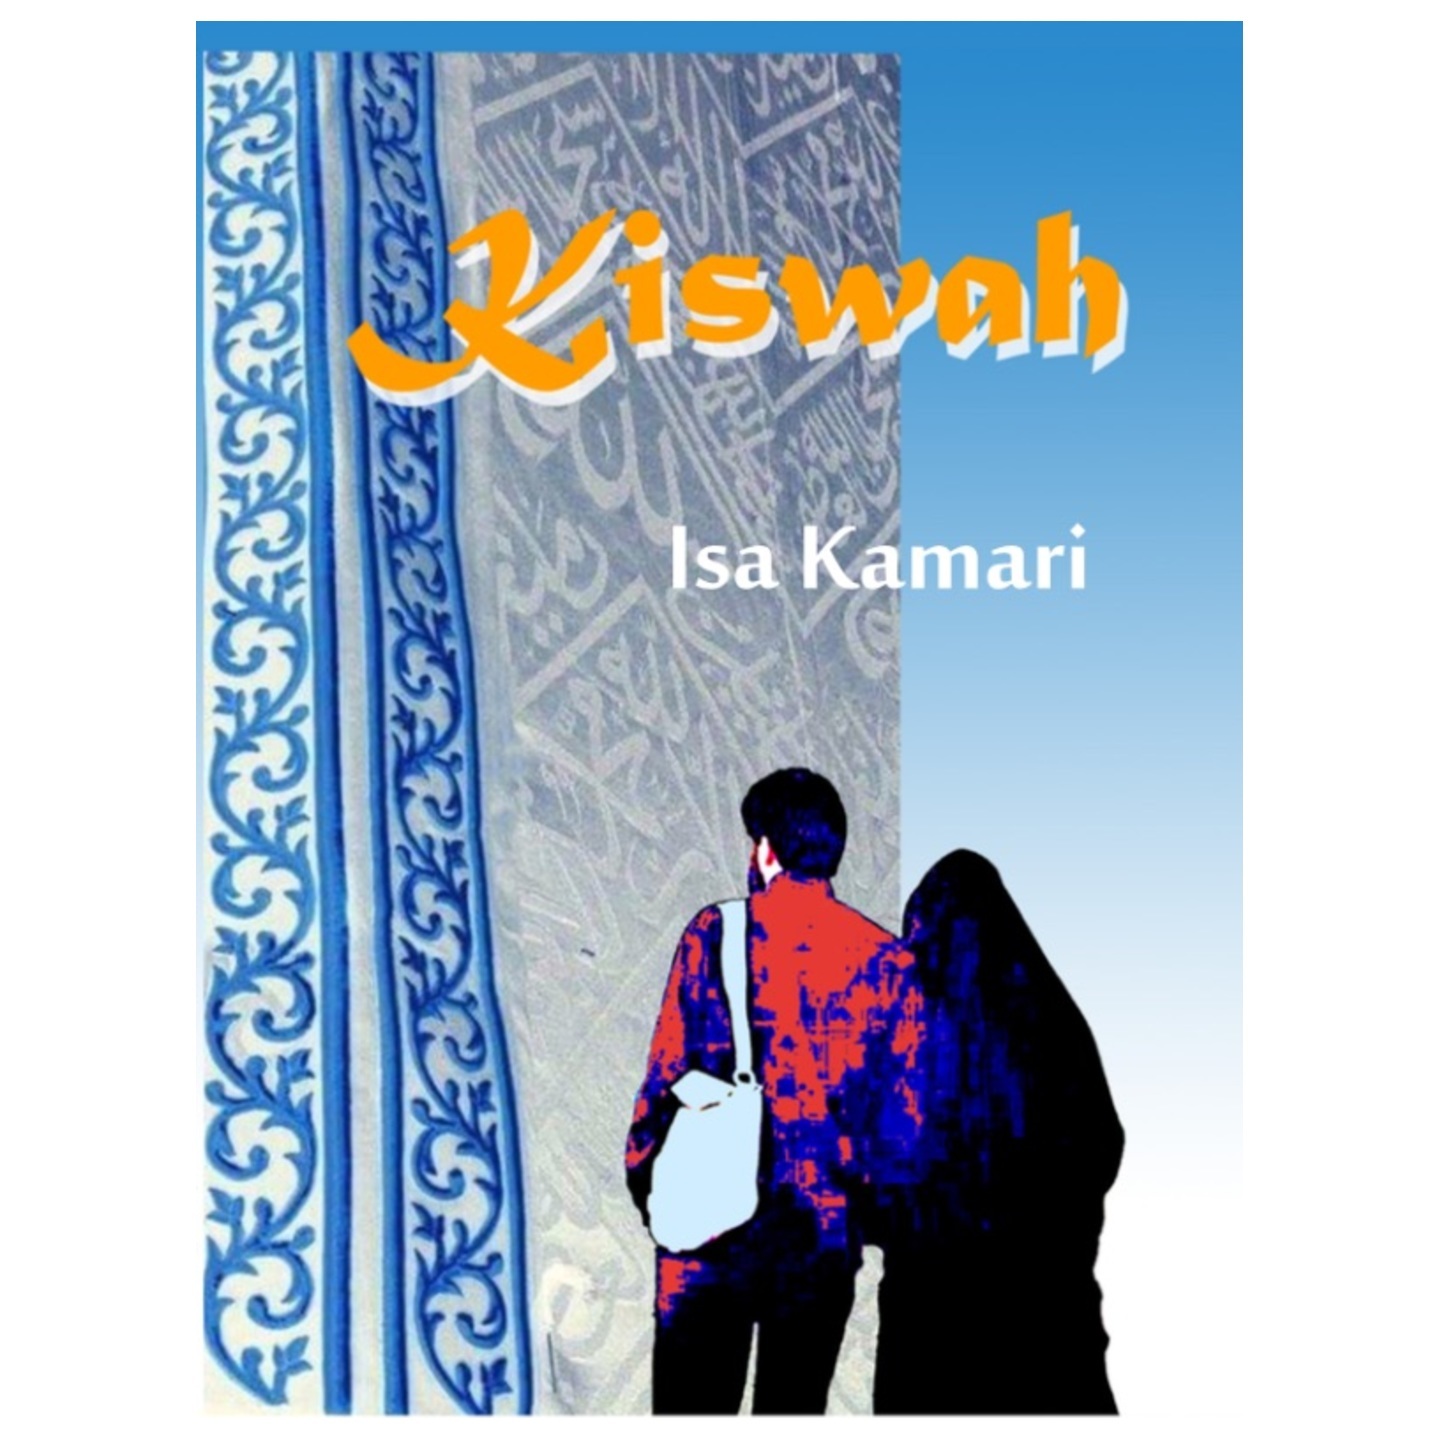 Kiswah, A novel by Isa Kamari